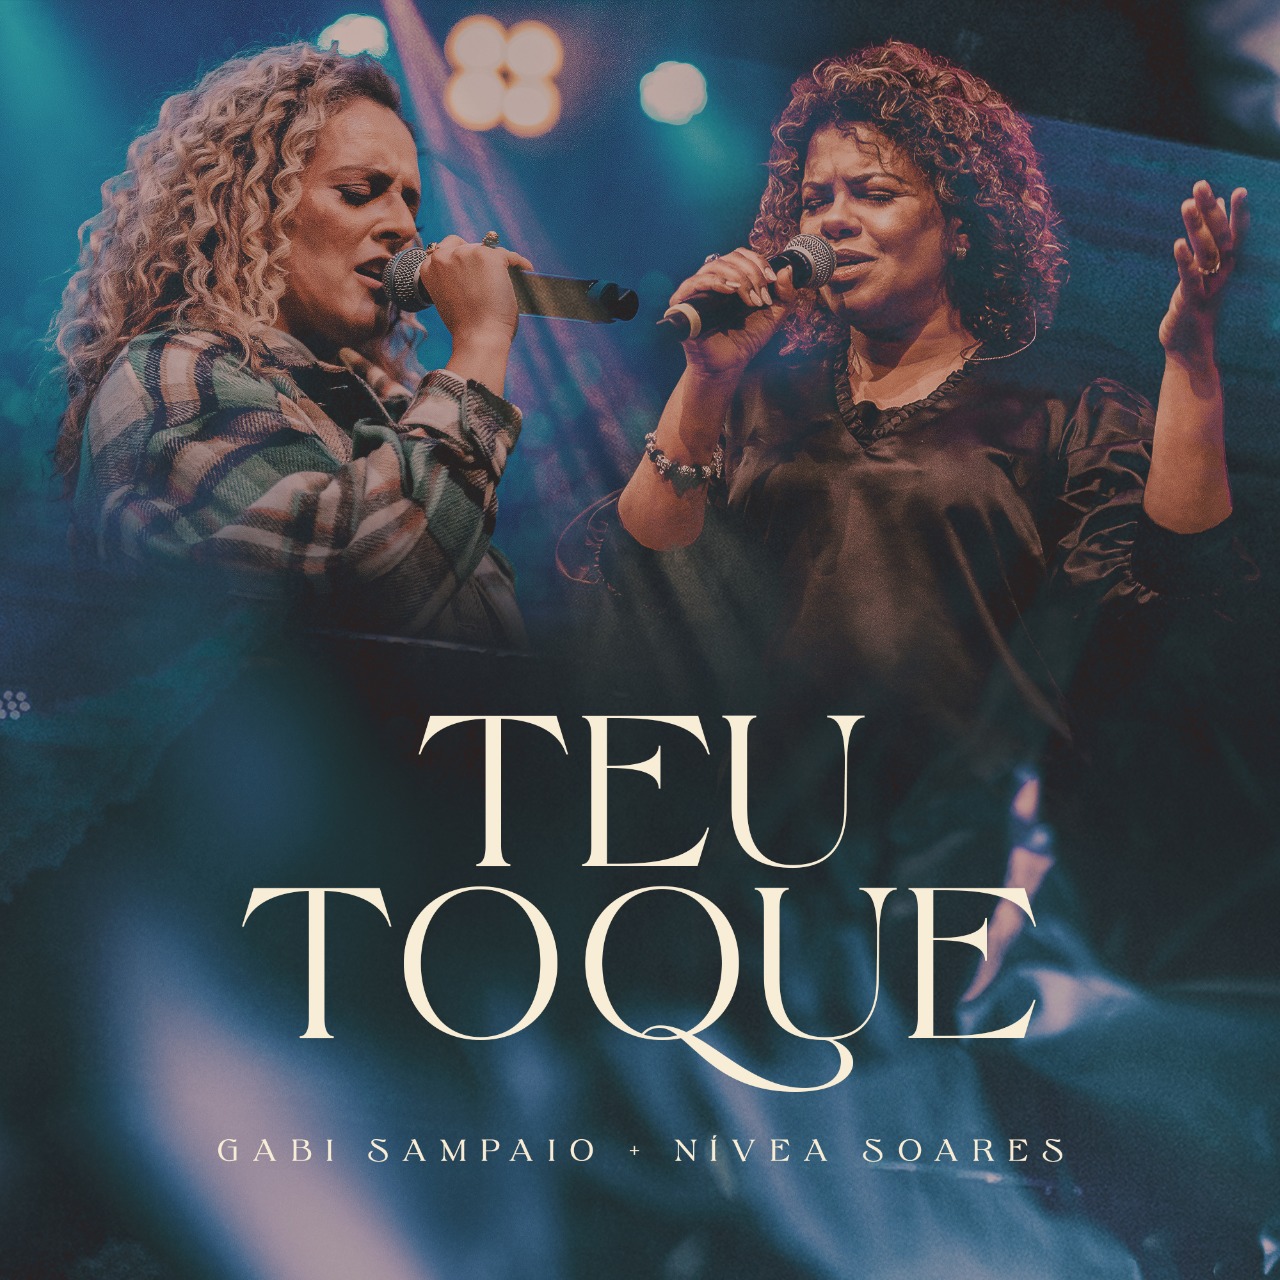 Gabi Sampaio feat. Nívea Soares, duas gerações de adoradoras cantando “Teu Toque”